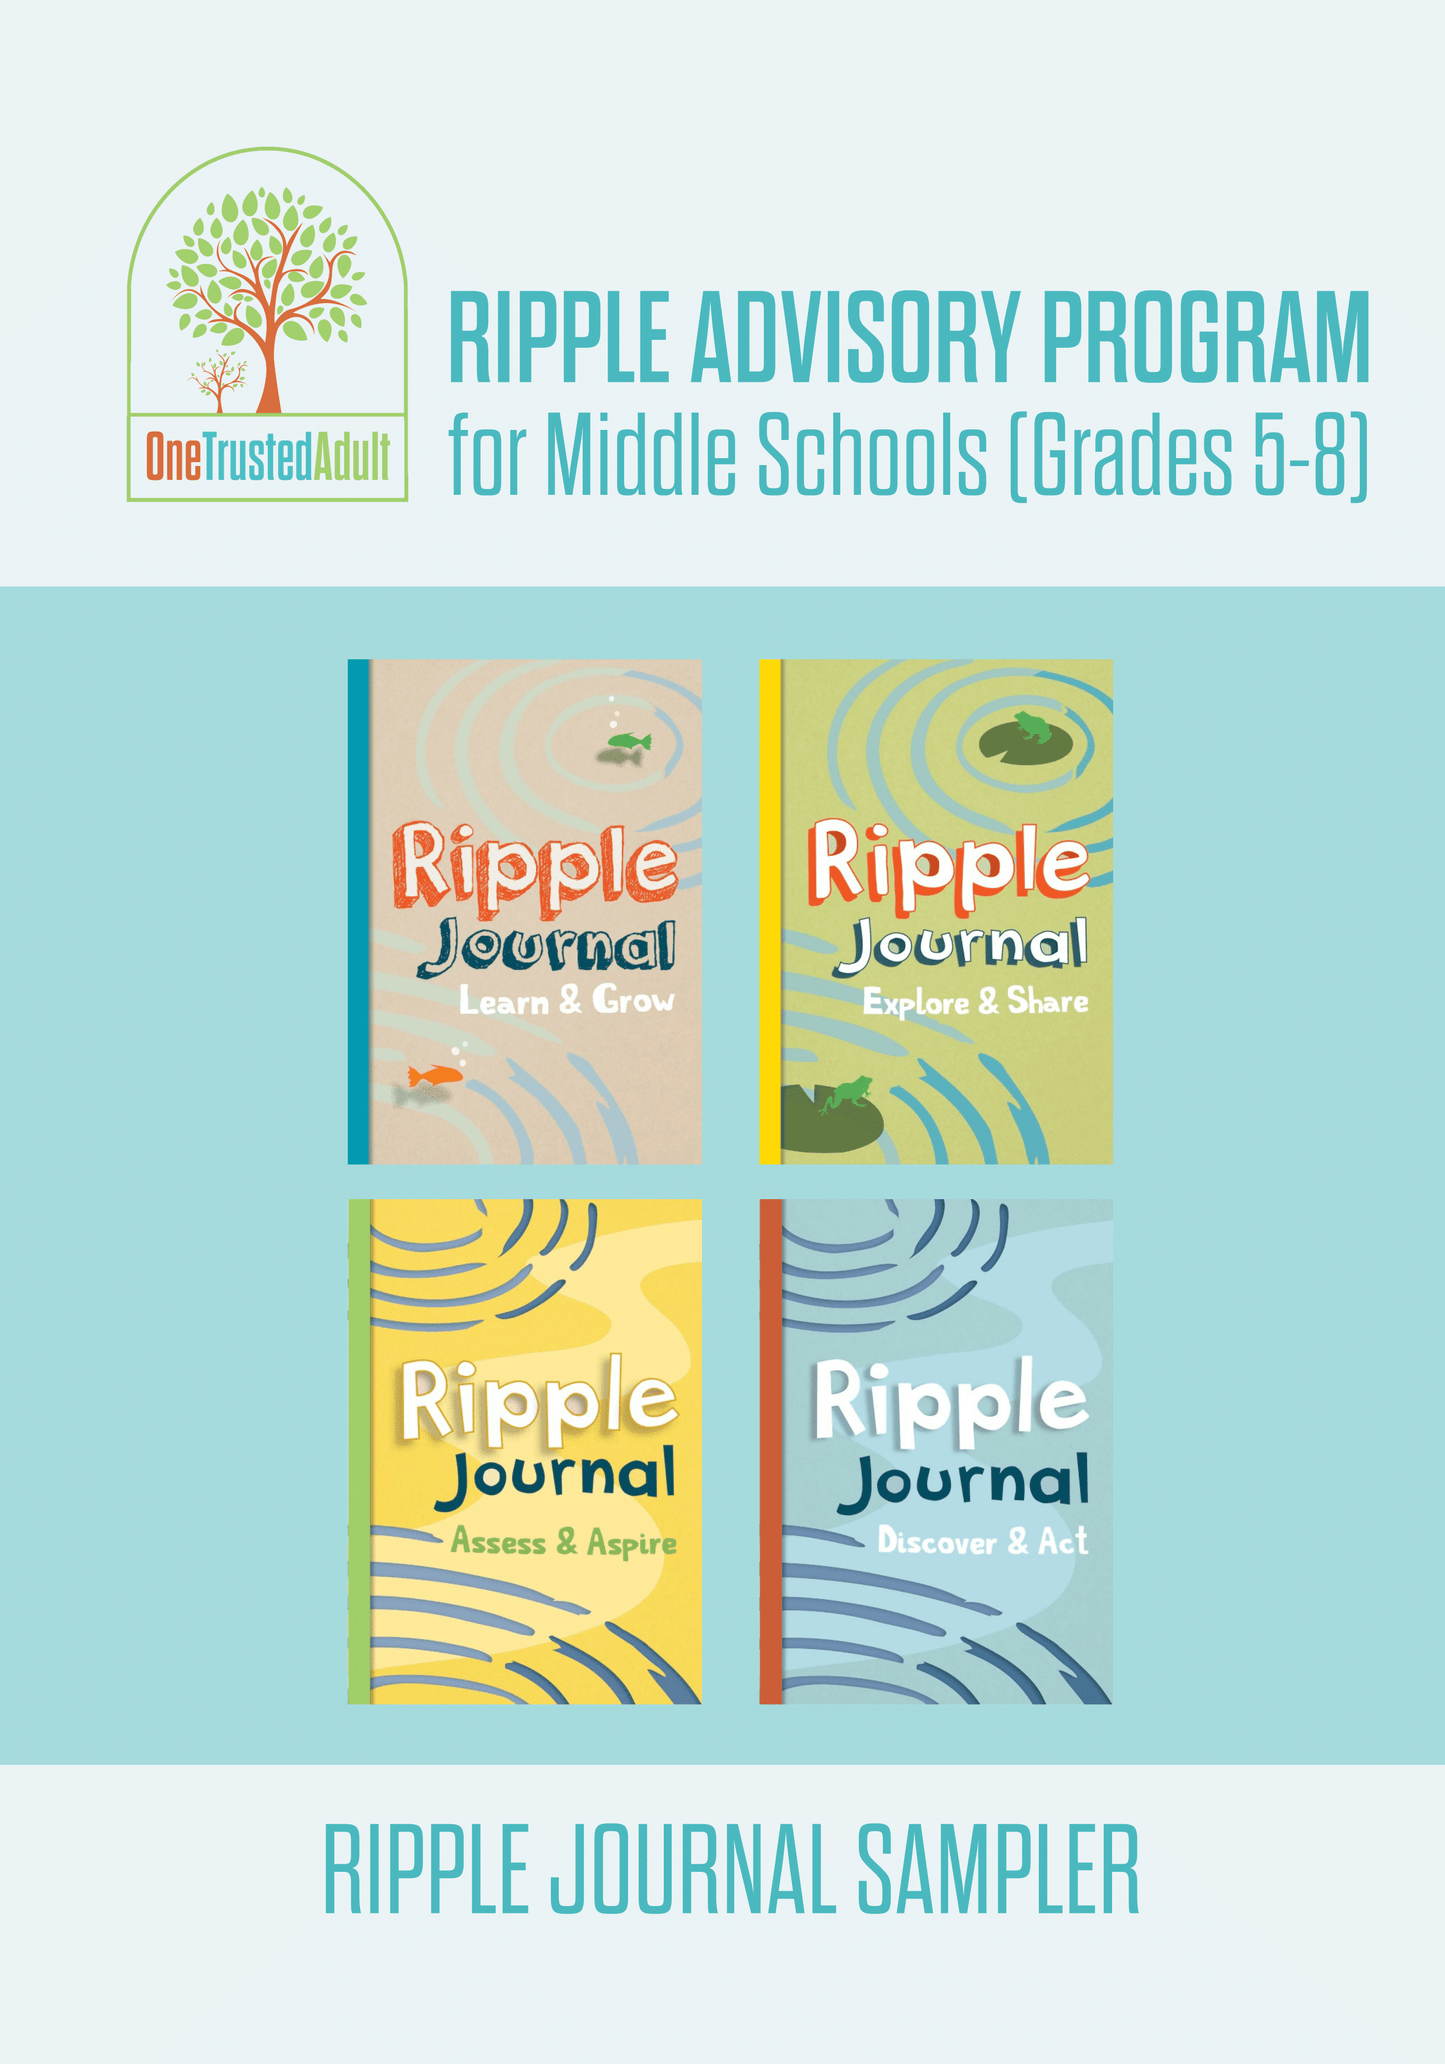 Ripple Journal Sample